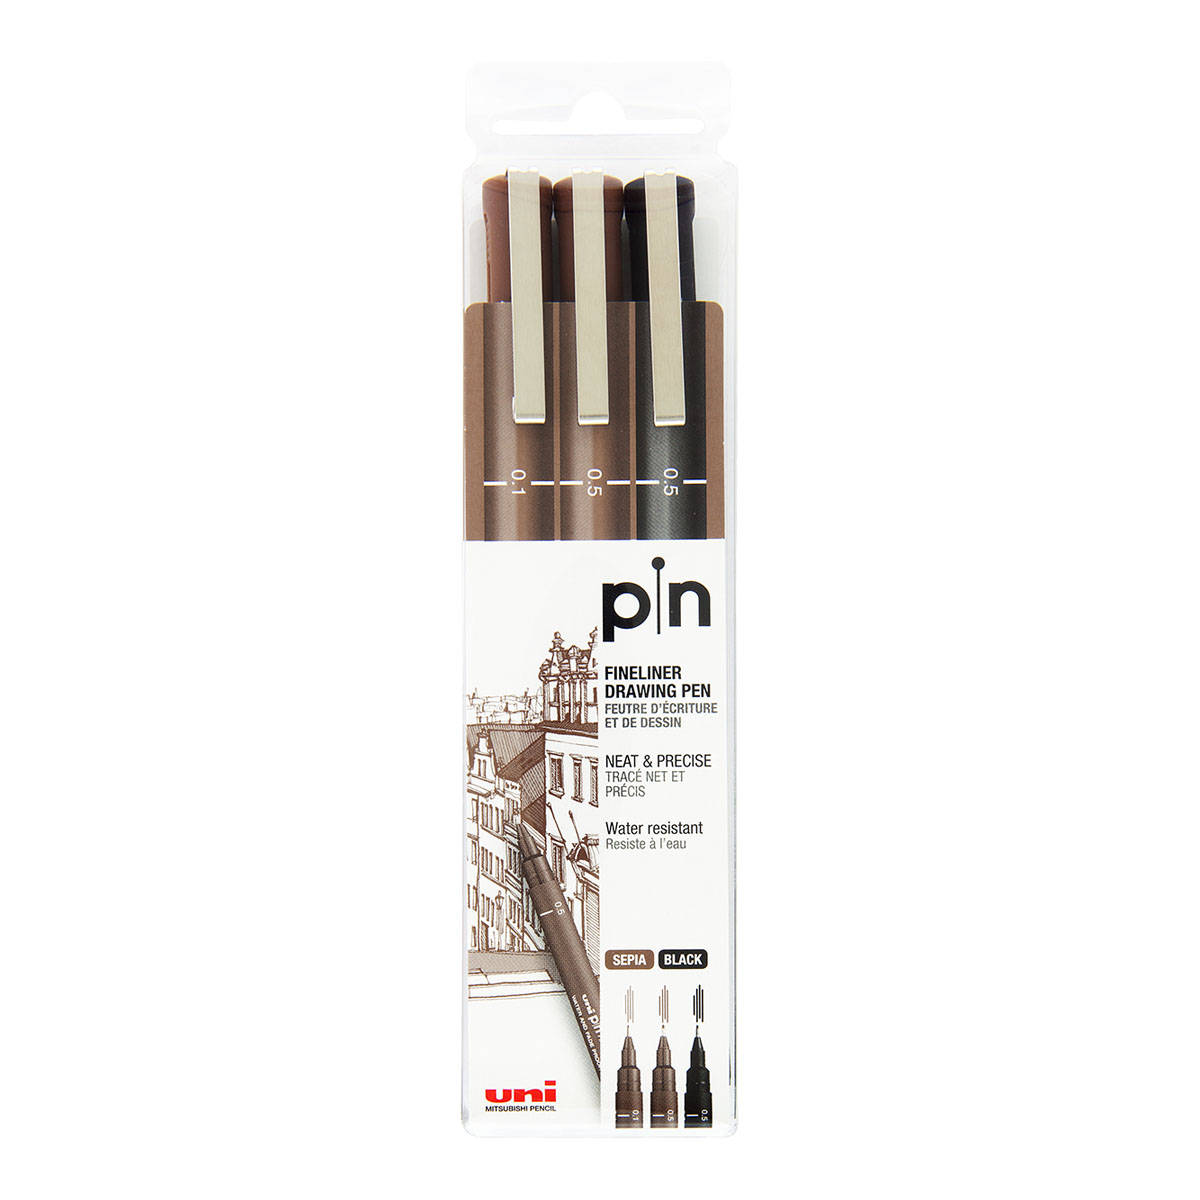 2 x Uni Pin Drawing Pen Fineliner Ultra Fine Line Marker in Black